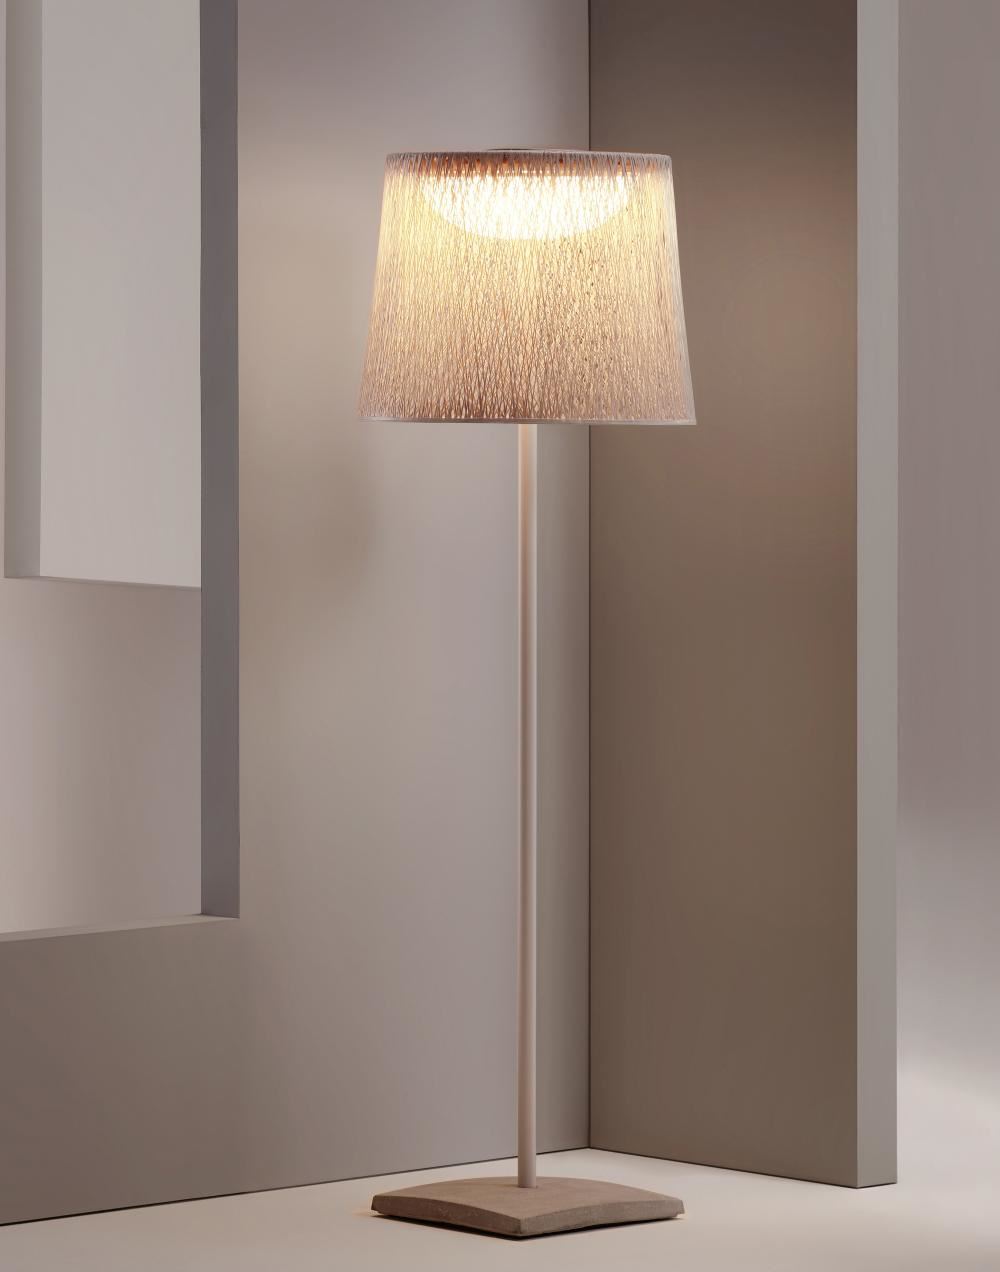 Vibia Wind Outdoor Floor Light 4057 Green Outdoor Lighting Outdoor Lighting Designer Floor Lamp